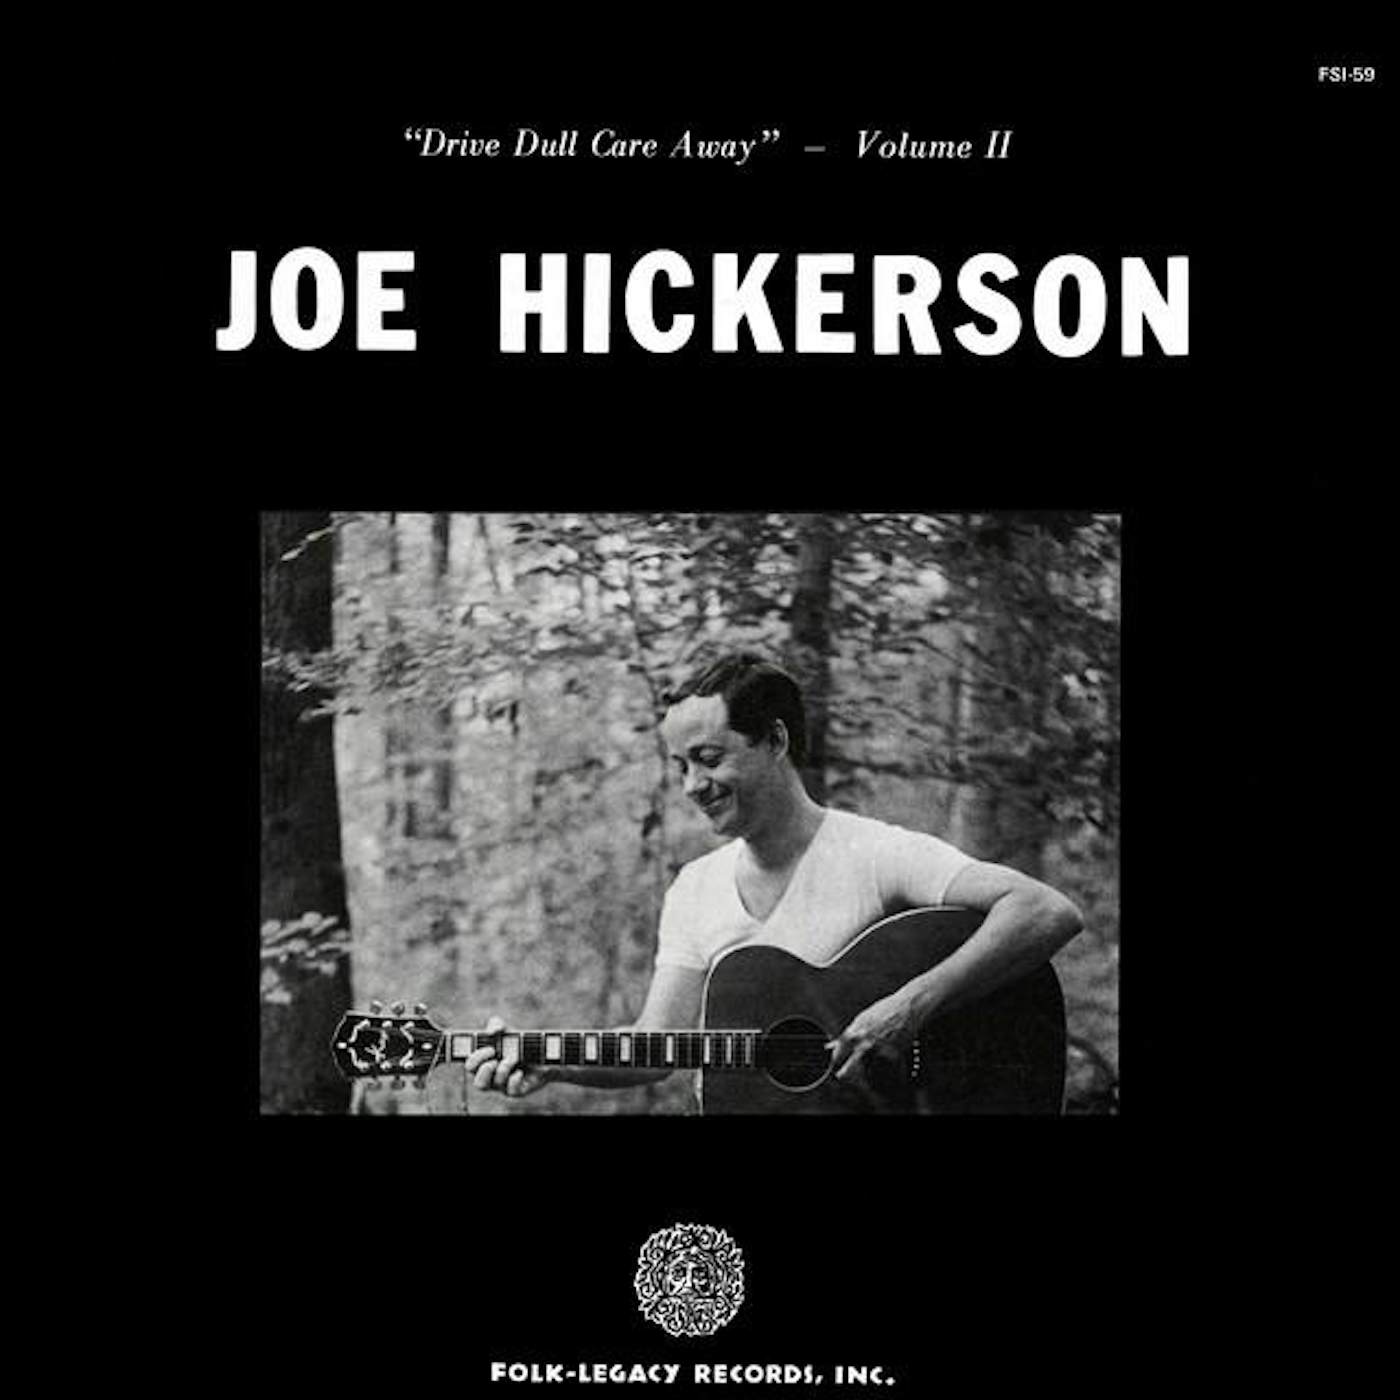 Joe Hickerson